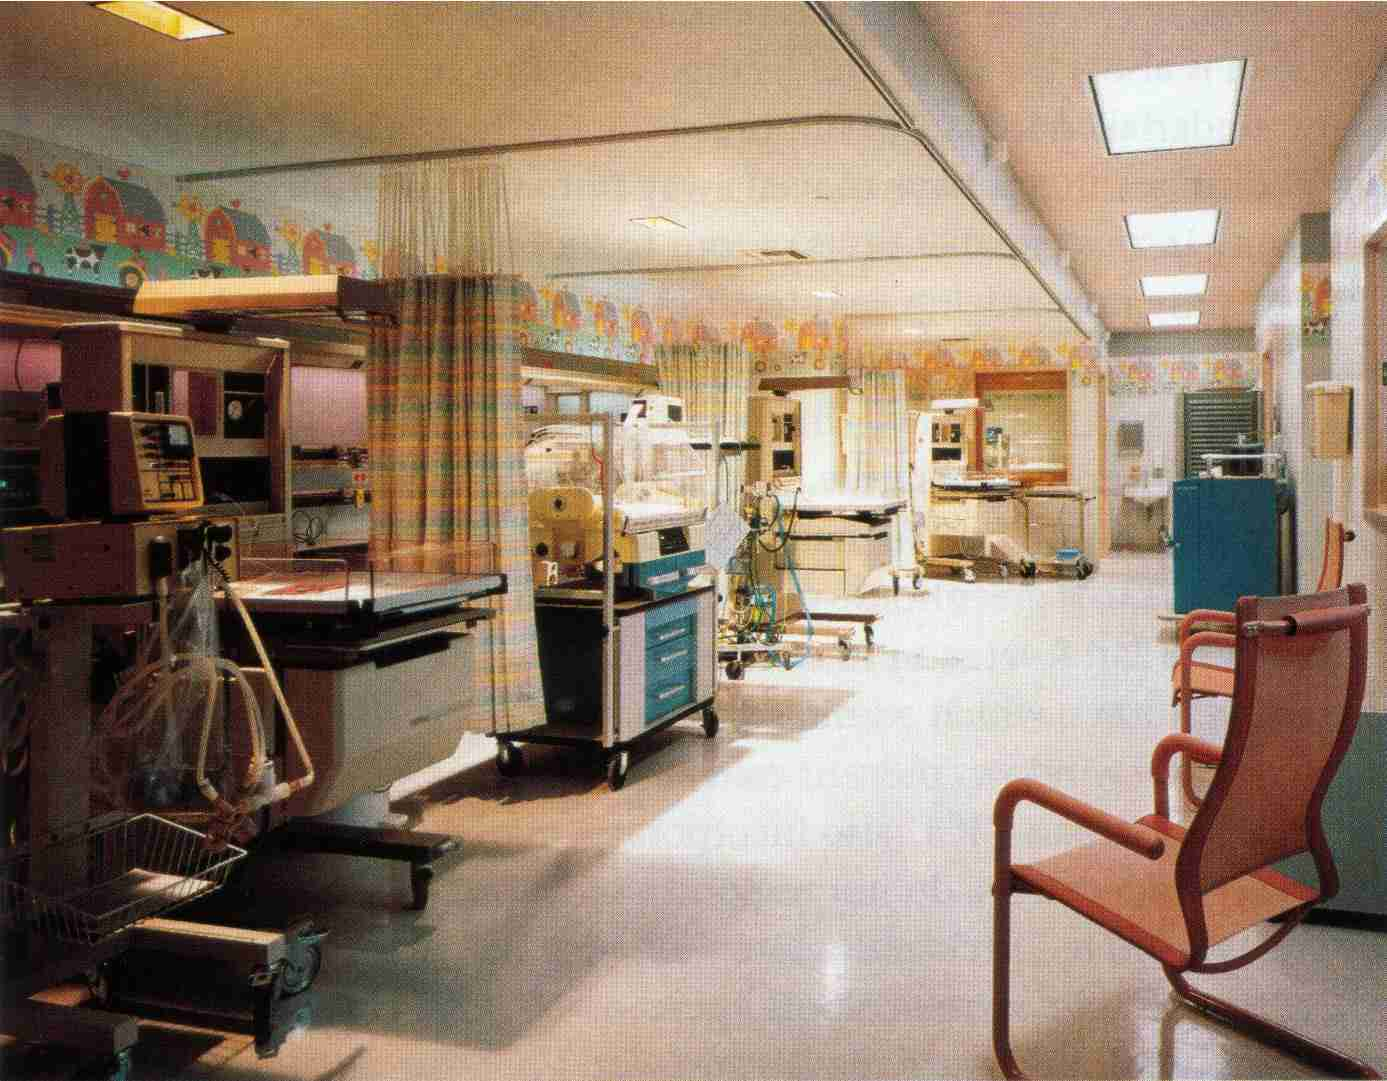 Shriners Hospital for Crippled Children / Galveston Burns Institute, Galveston, Texas 